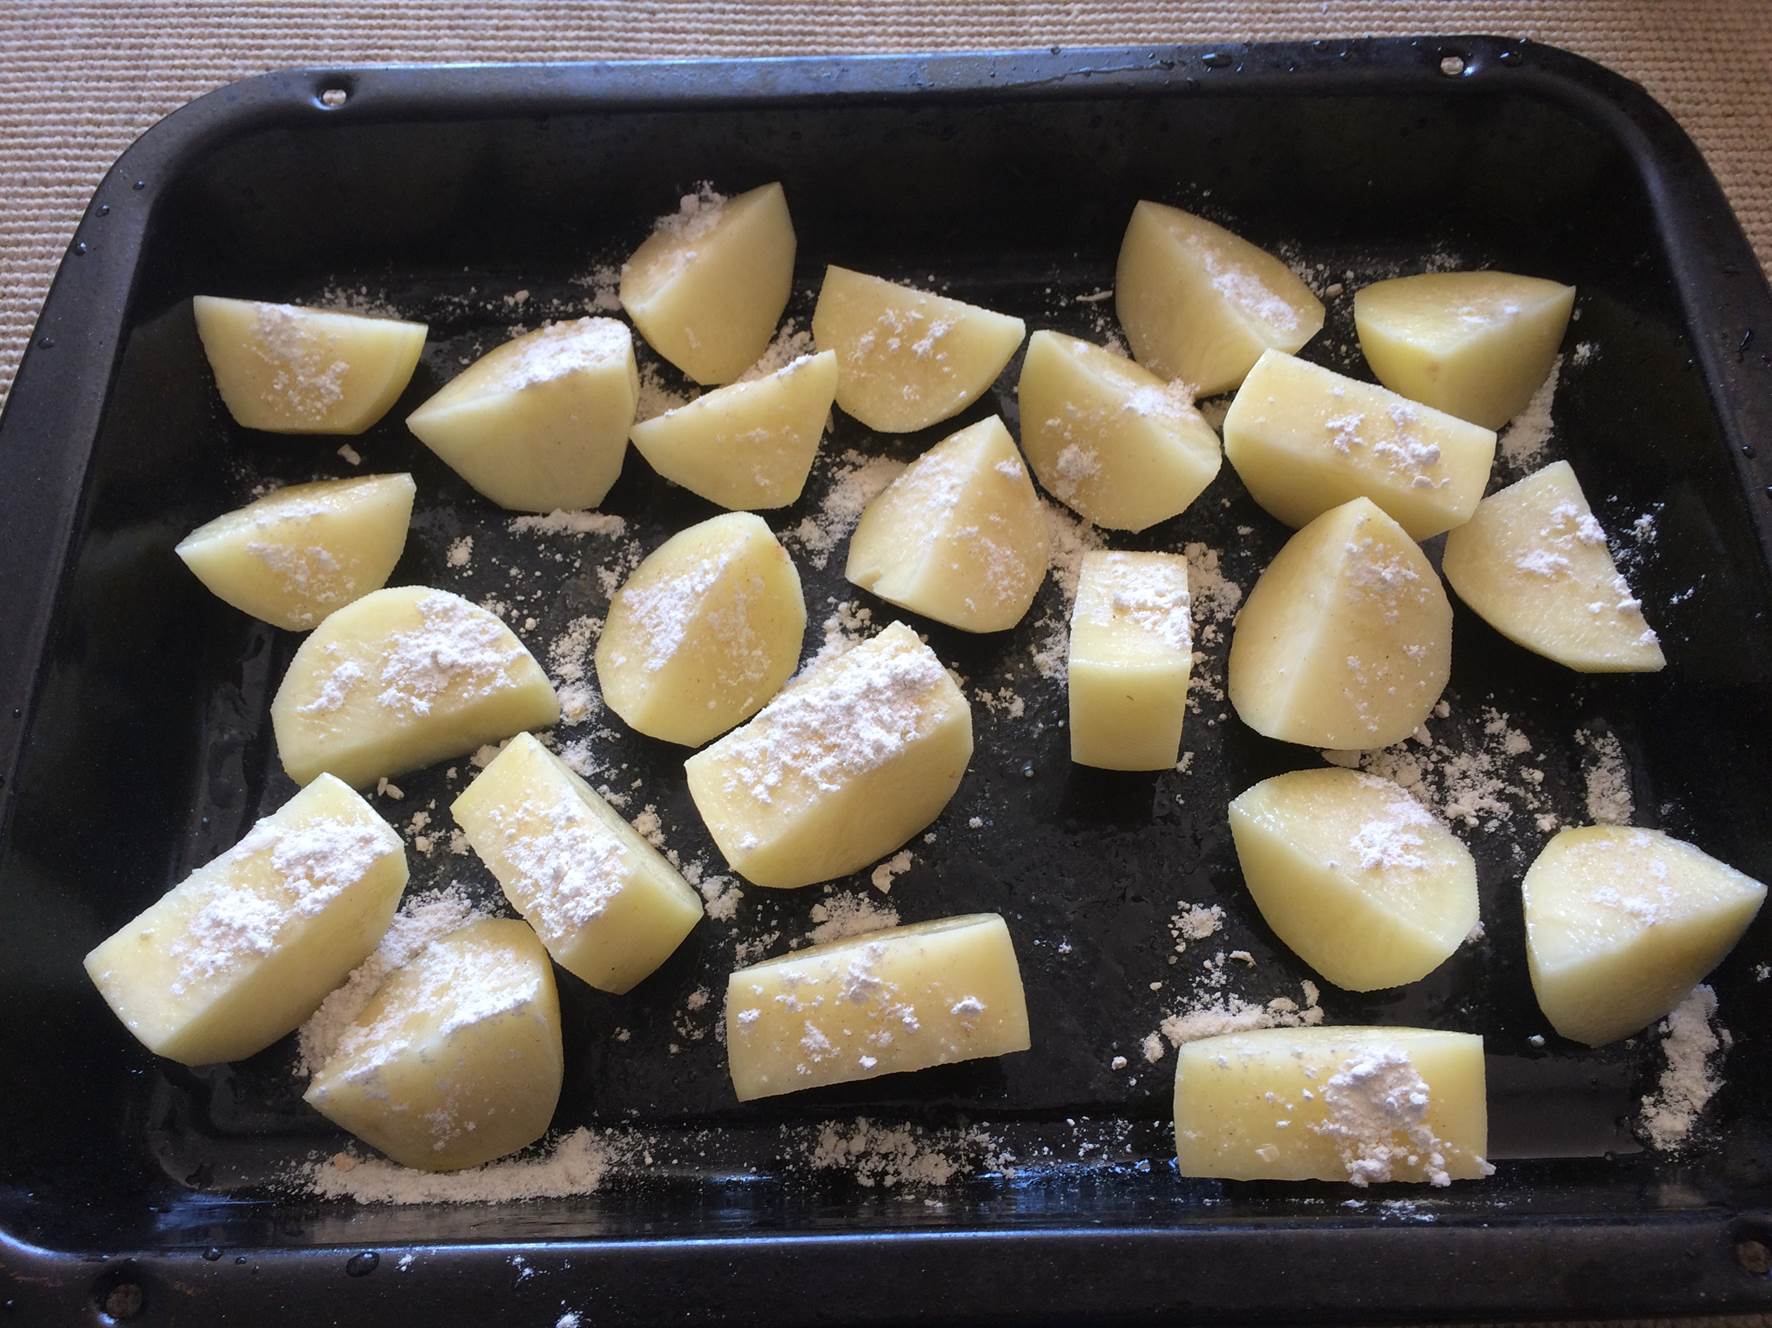 prepared potatoes